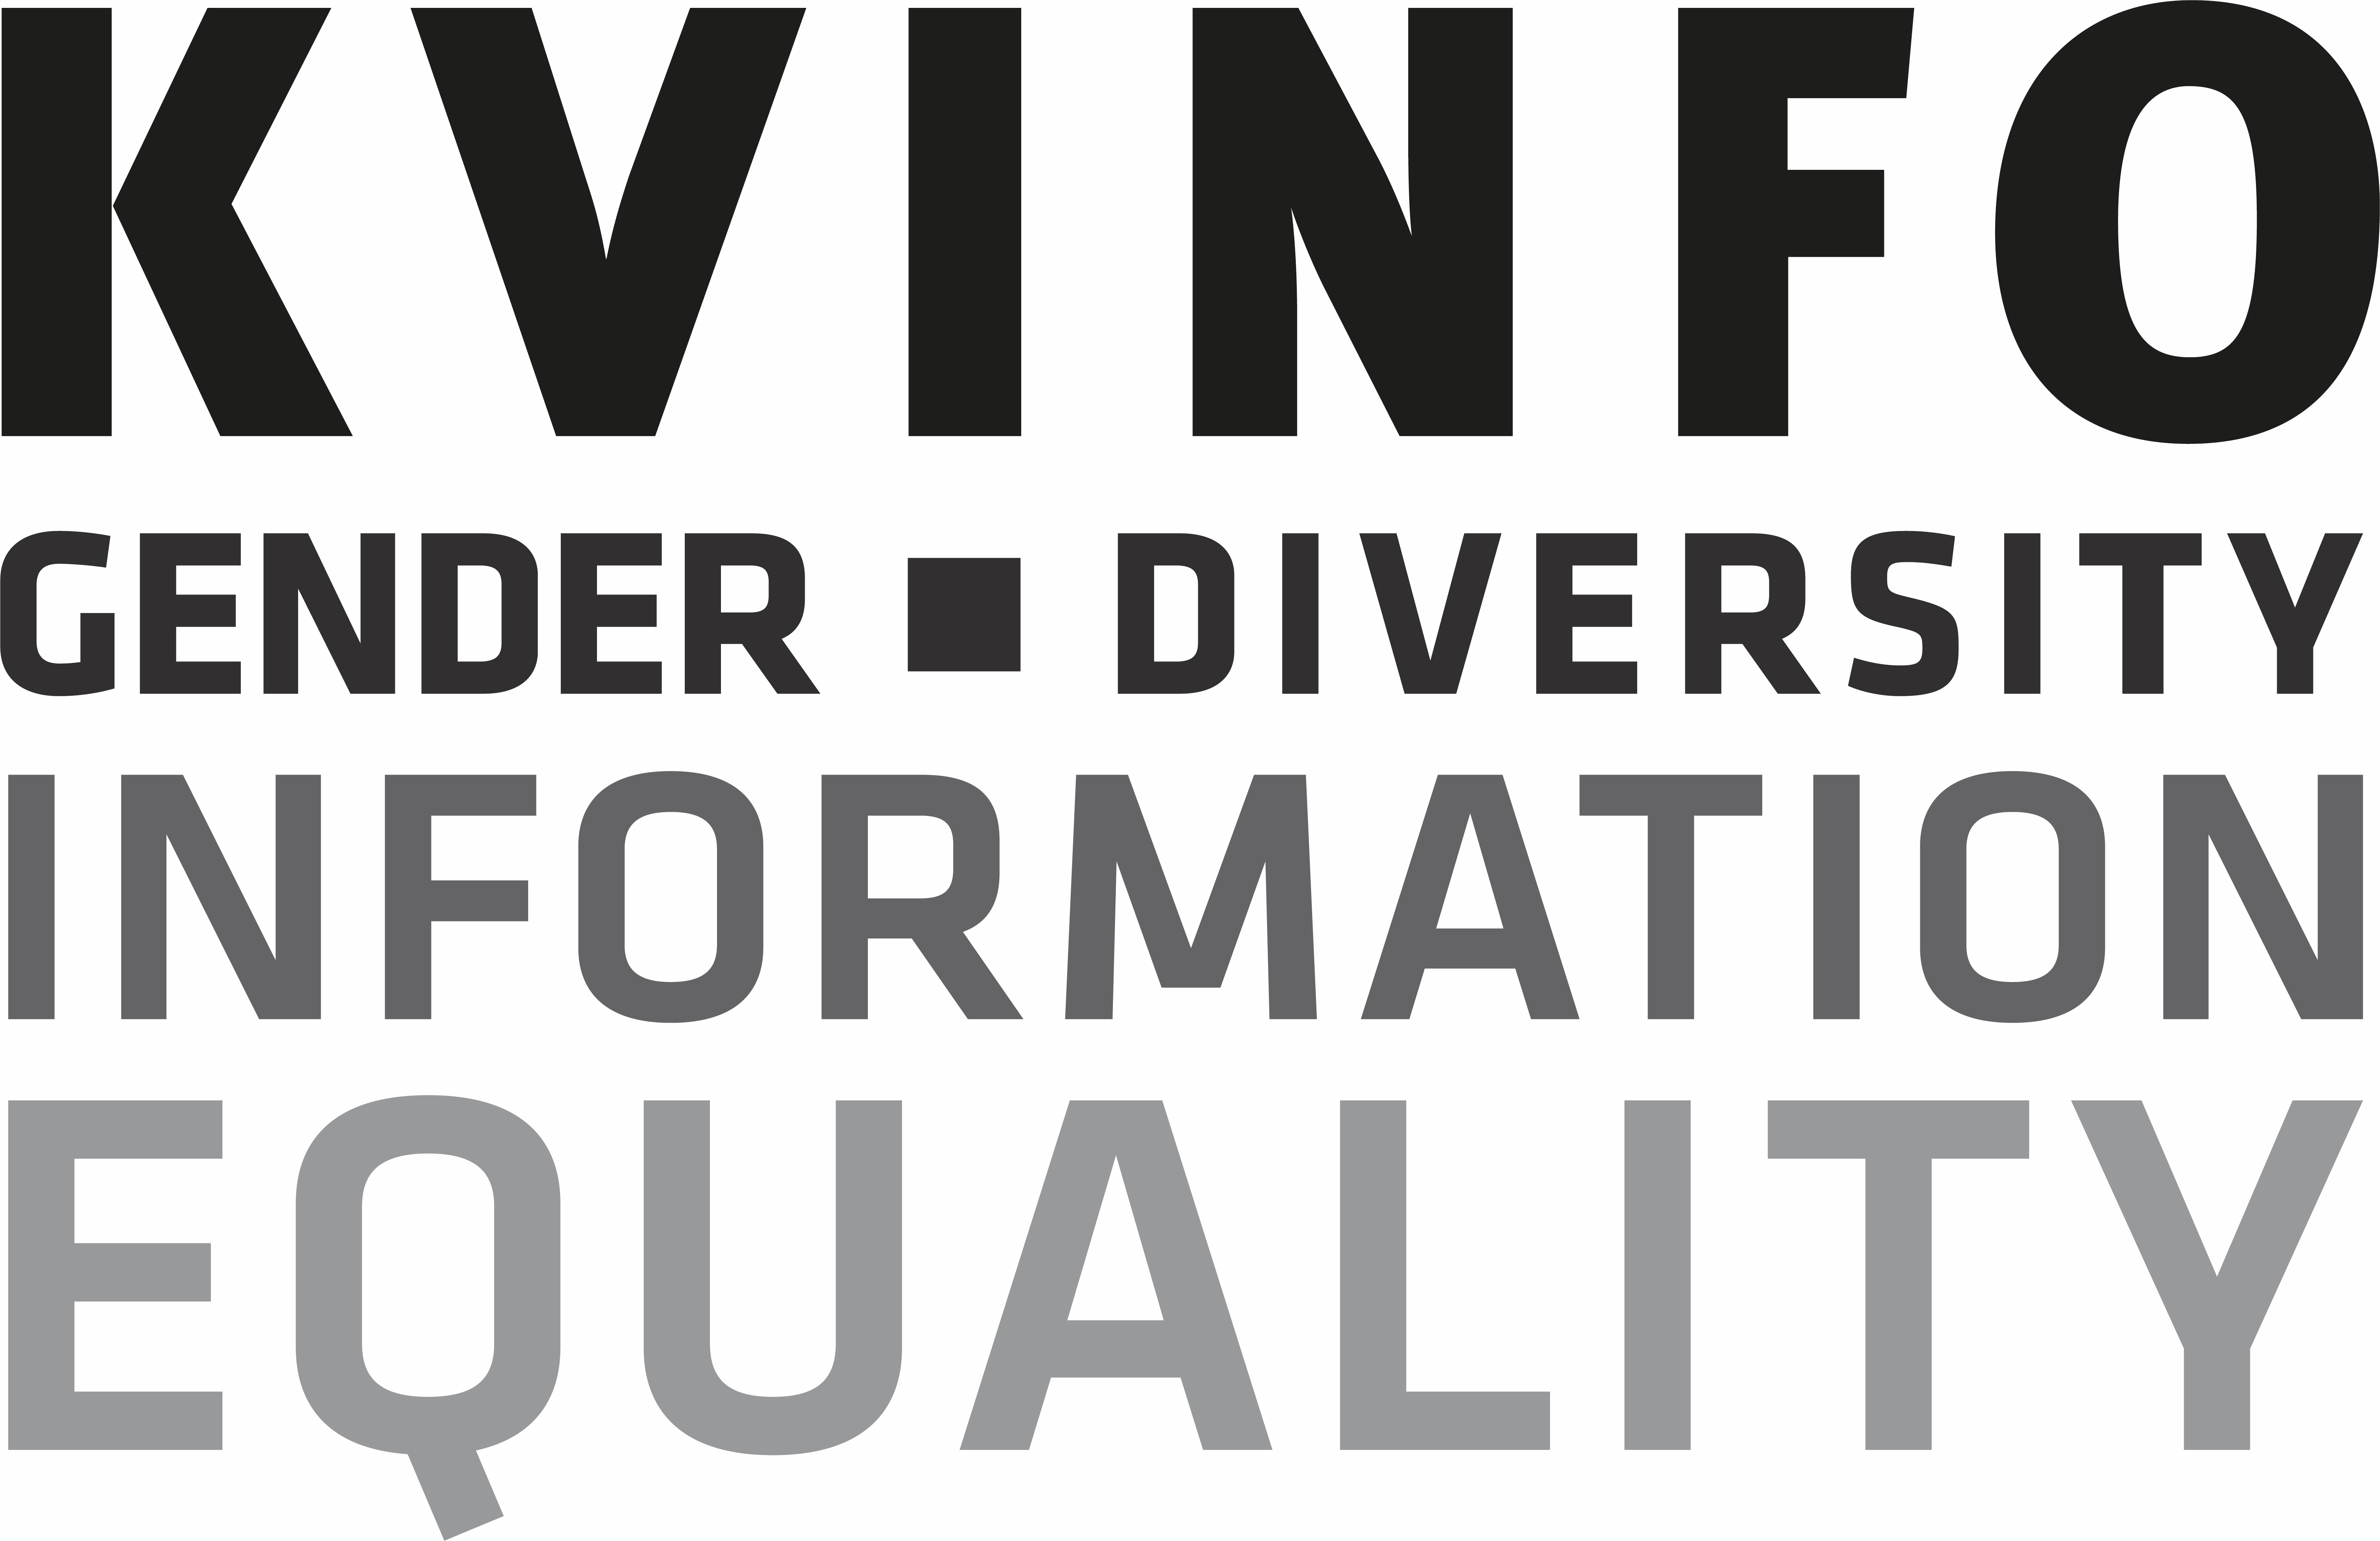 المركز الدنماركي للدراسات حول النوع الاجتماعي والمساواة والعرق (كفينفو logo